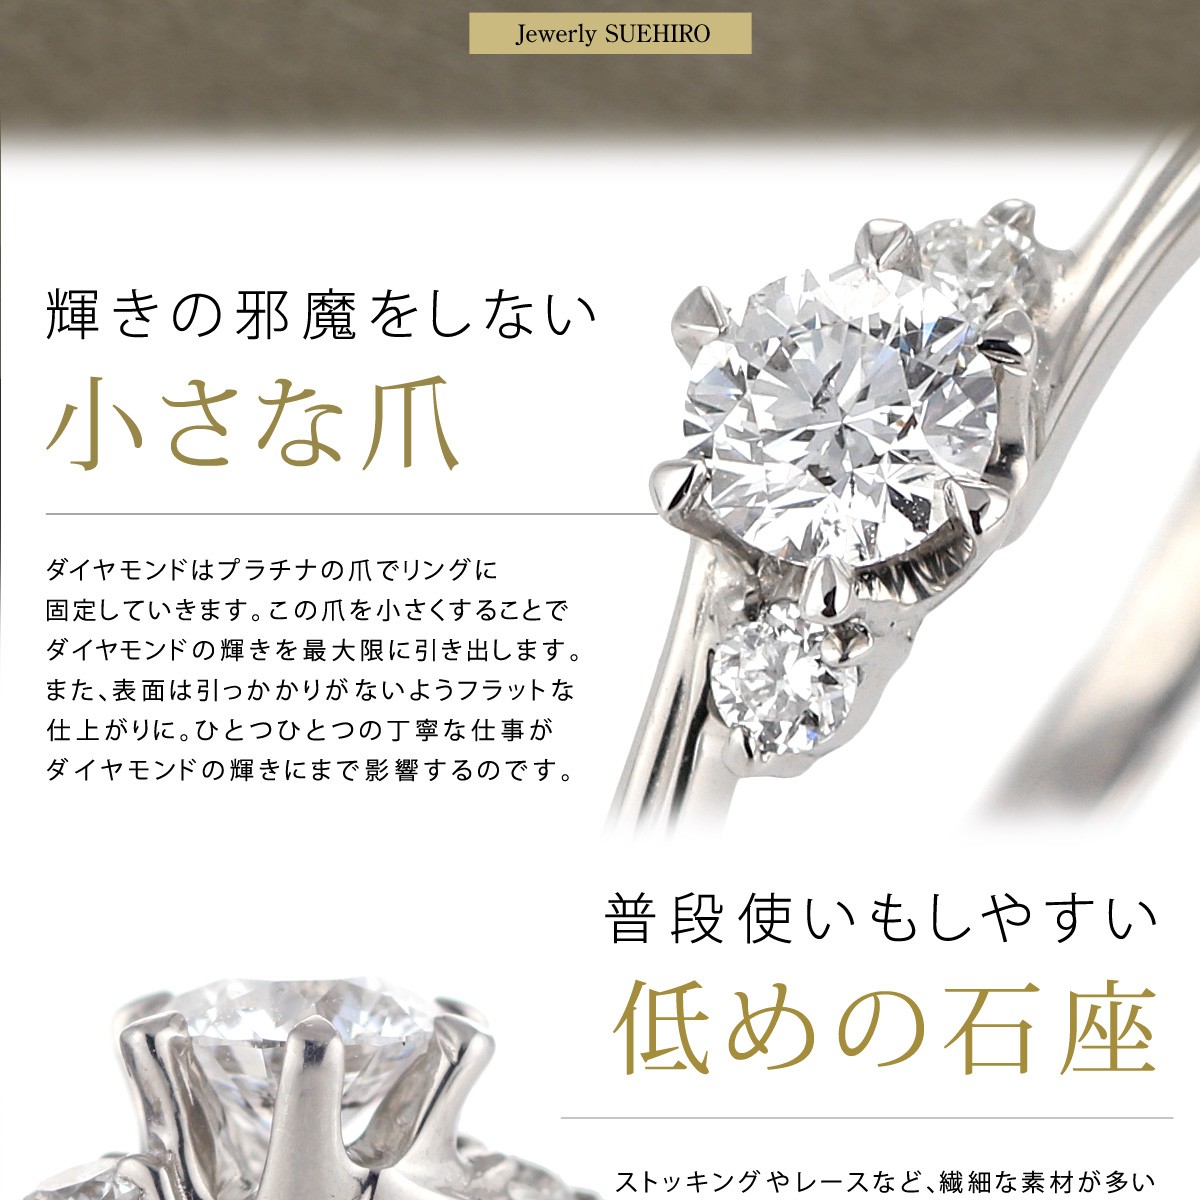 正式的100 正規品 ダイヤモンド ダイヤ エンゲージリング 人気 セール ダイヤモンド 婚約指輪 ダイヤ エンゲージリング 刻印無料 セール リング H125 Suehiro リング 指輪 プラチナ